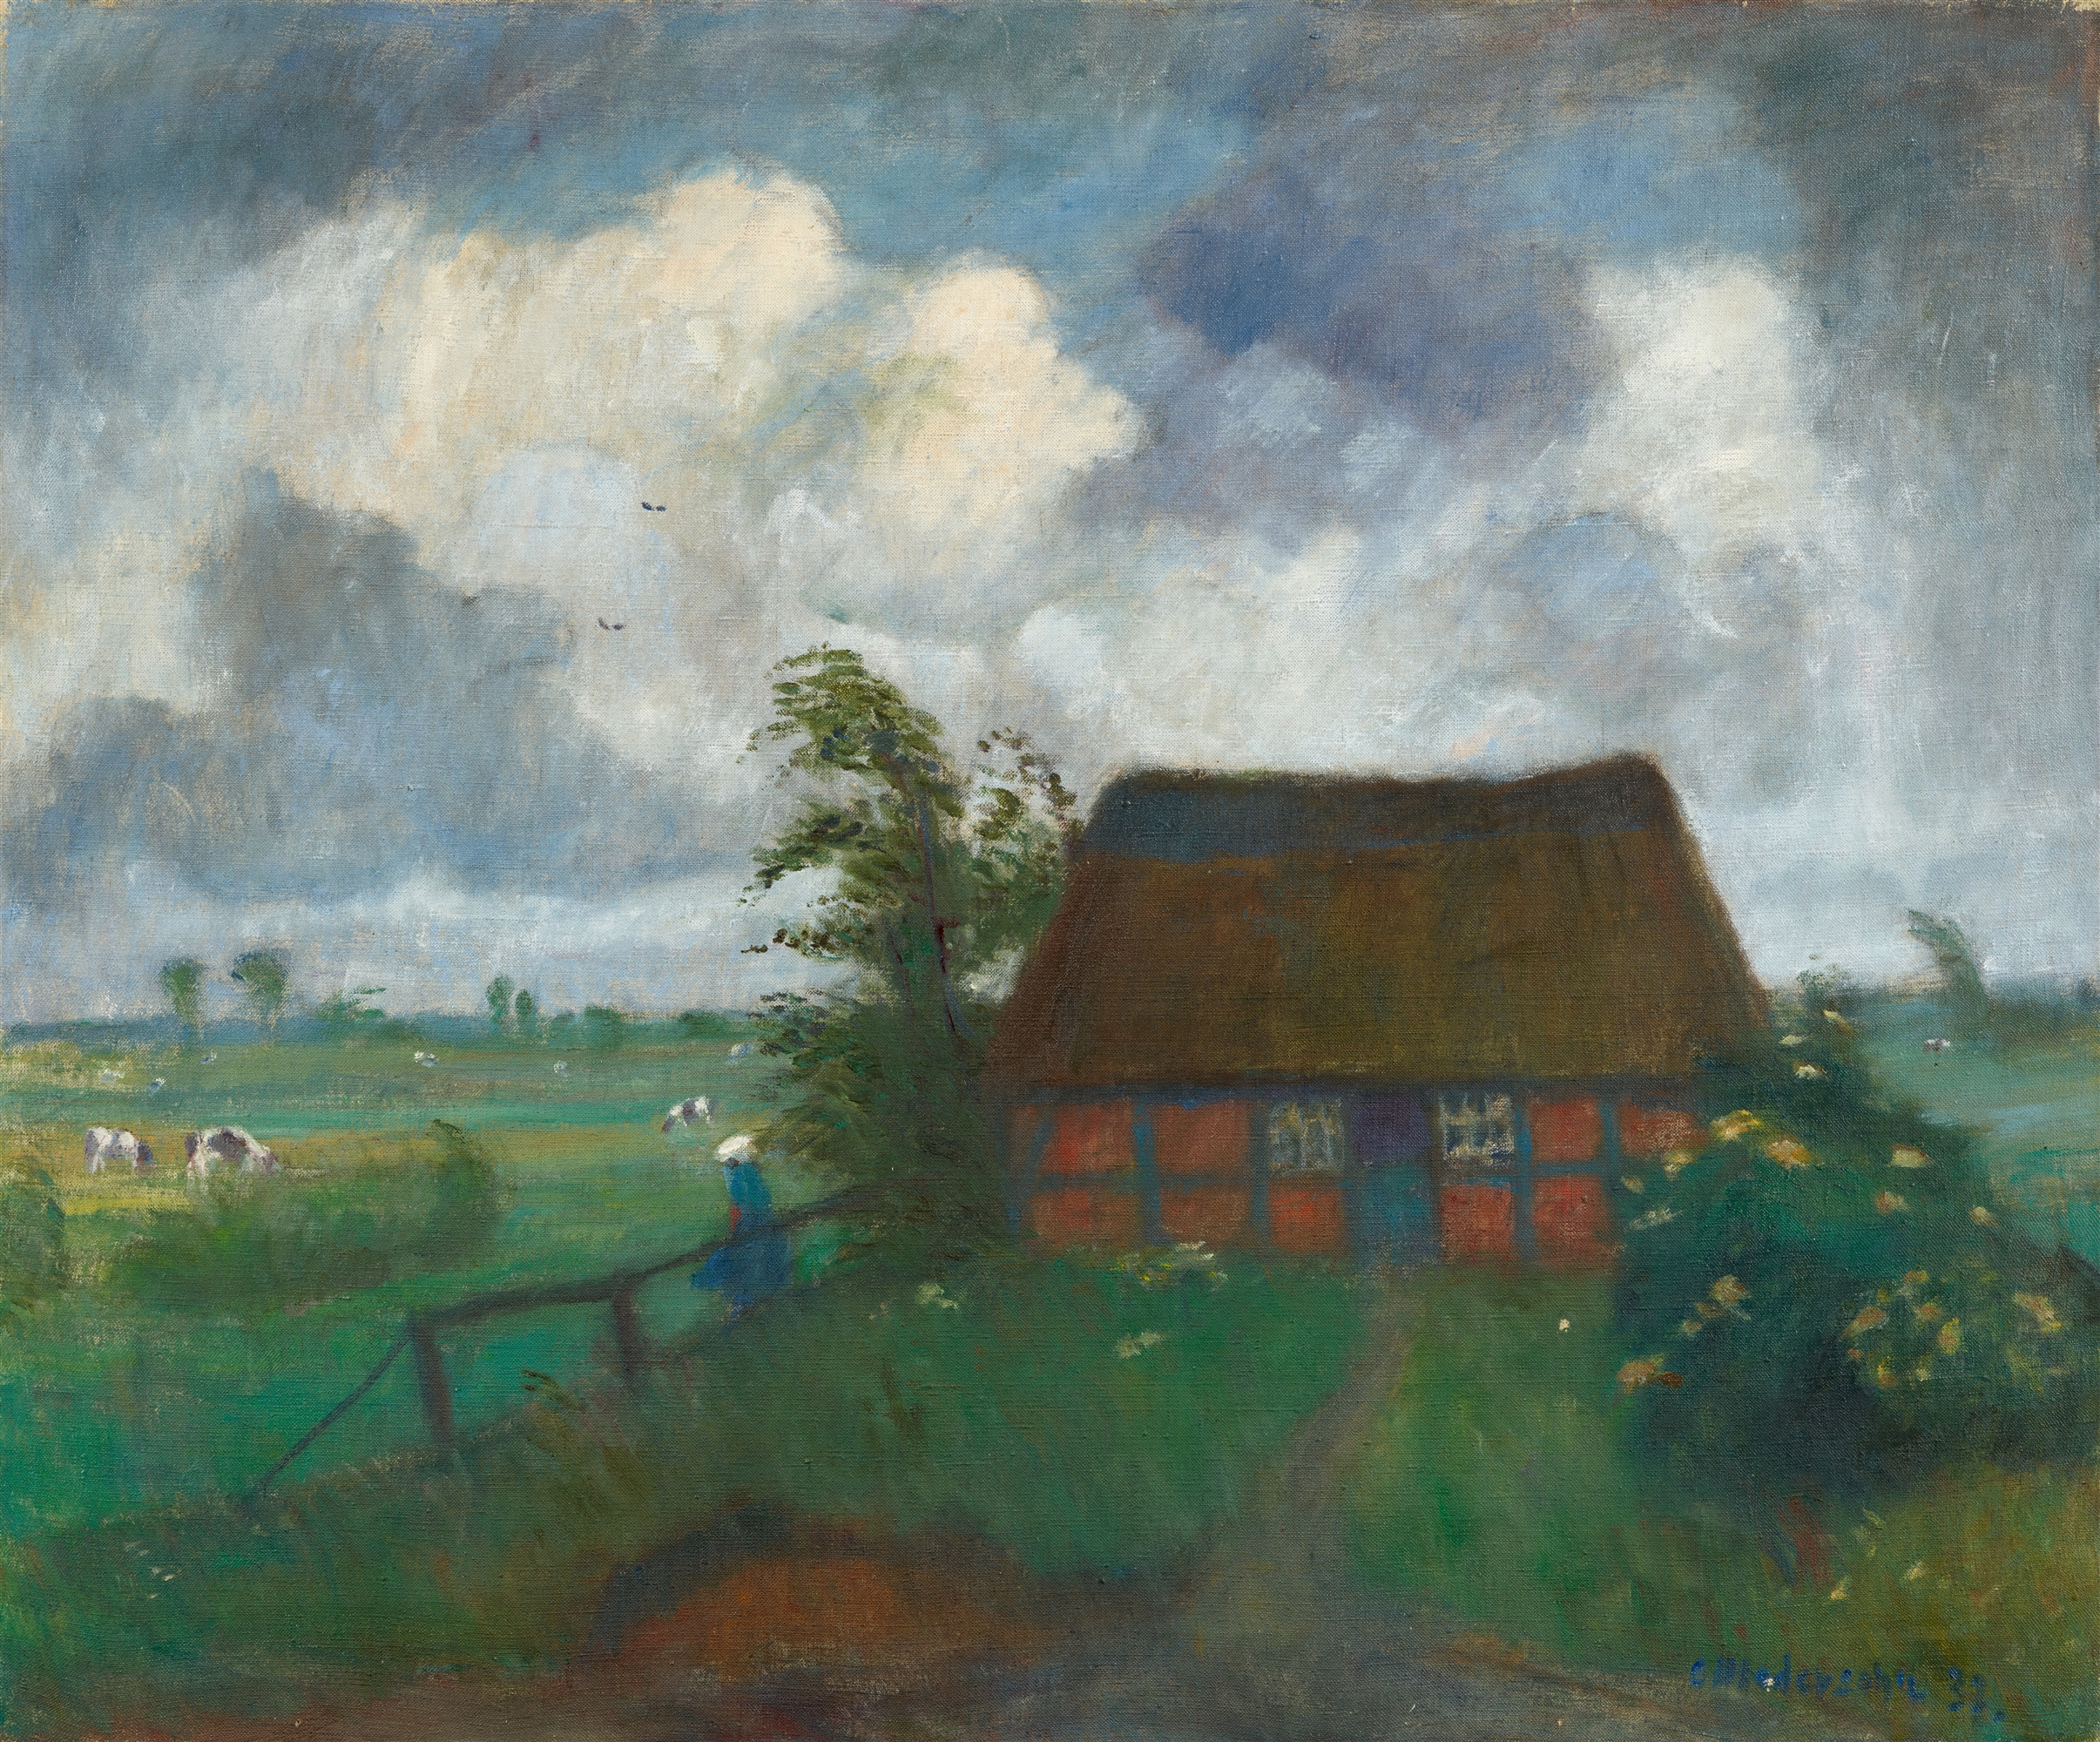 Otto Modersohn, Regenwolken über Gehöft in den Wümmewiesen